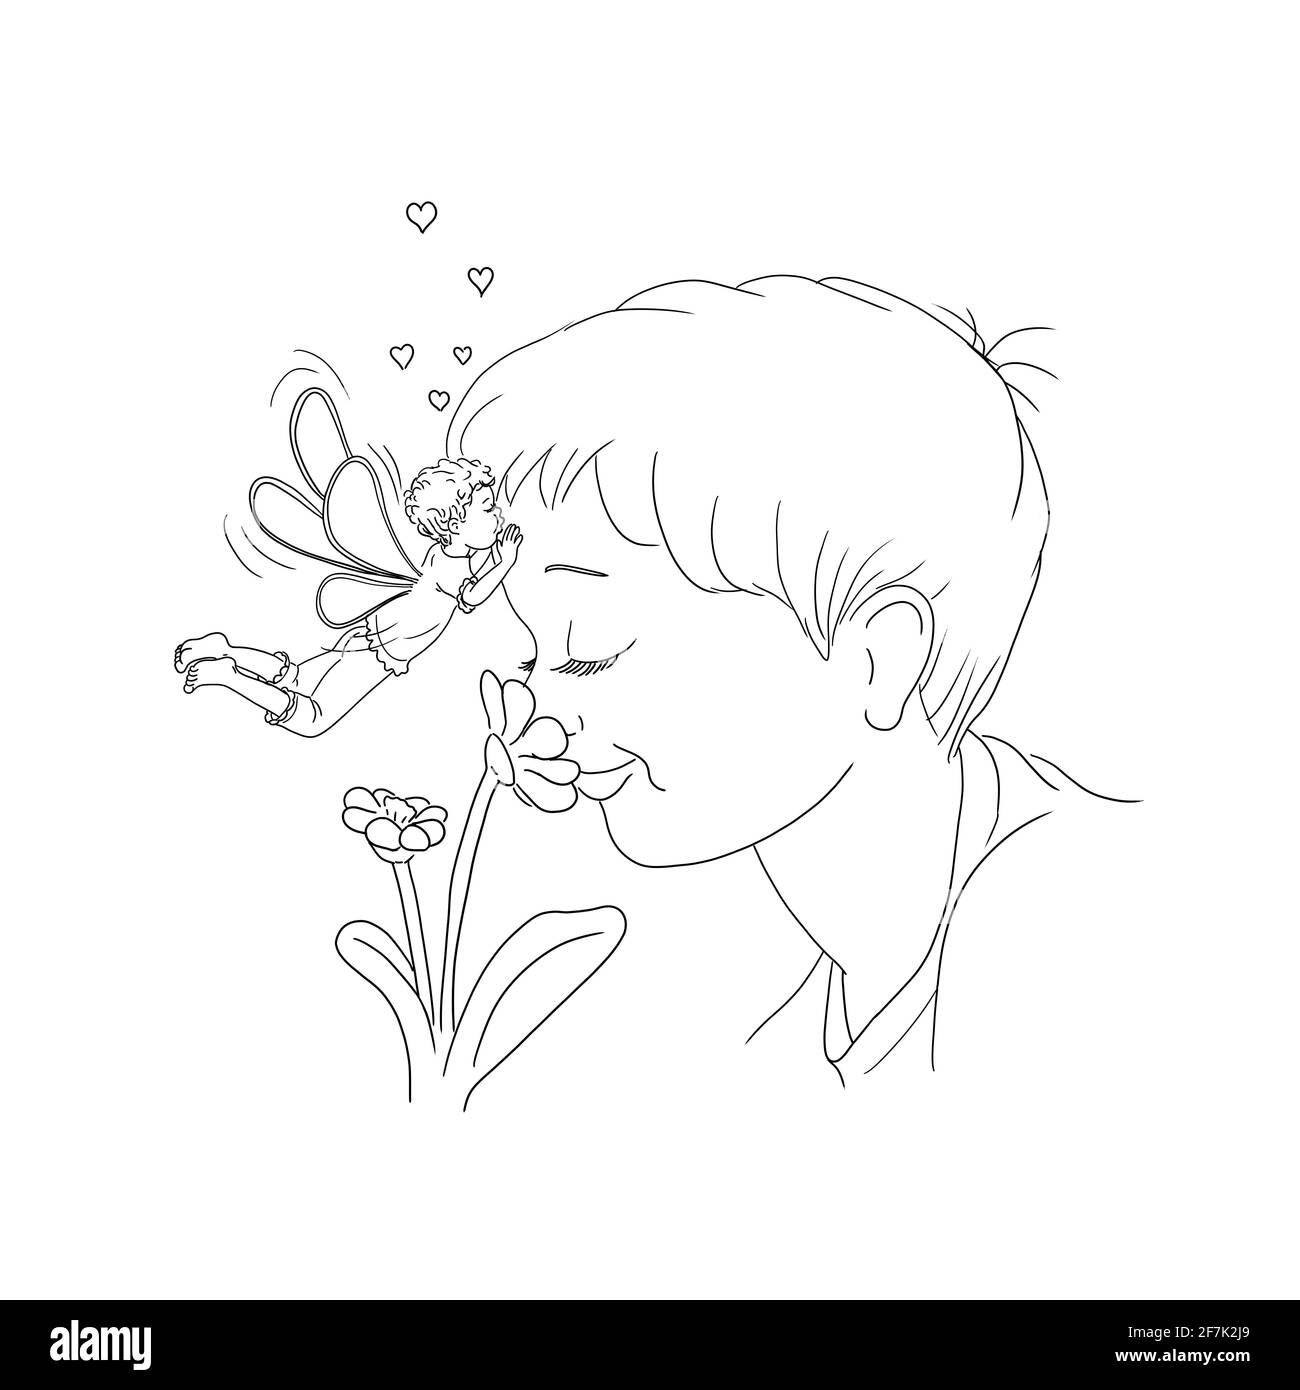 Junge Kind riecht an Blumenaugen geschlossen lächelnd lächelnd lachend Joy Enjoy elf fliegt schwebt und küsst ihn auf dem Stirn kleine Herzen fliegen Liebe affecti Stockfoto